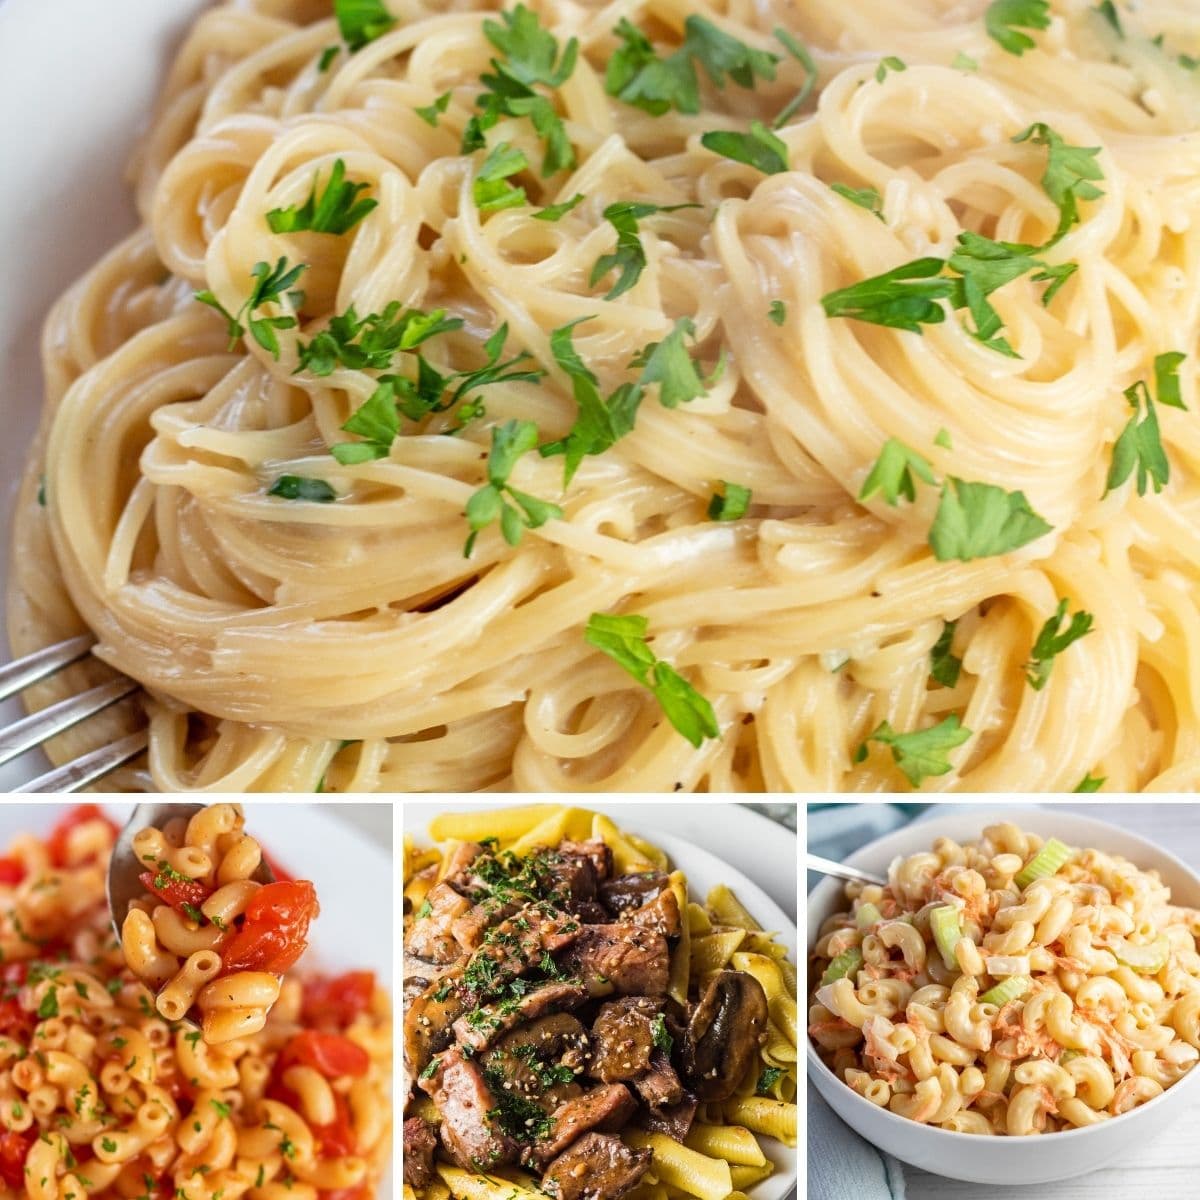 Bedste pastaopskrifter collagebillede med 4 velsmagende retter.